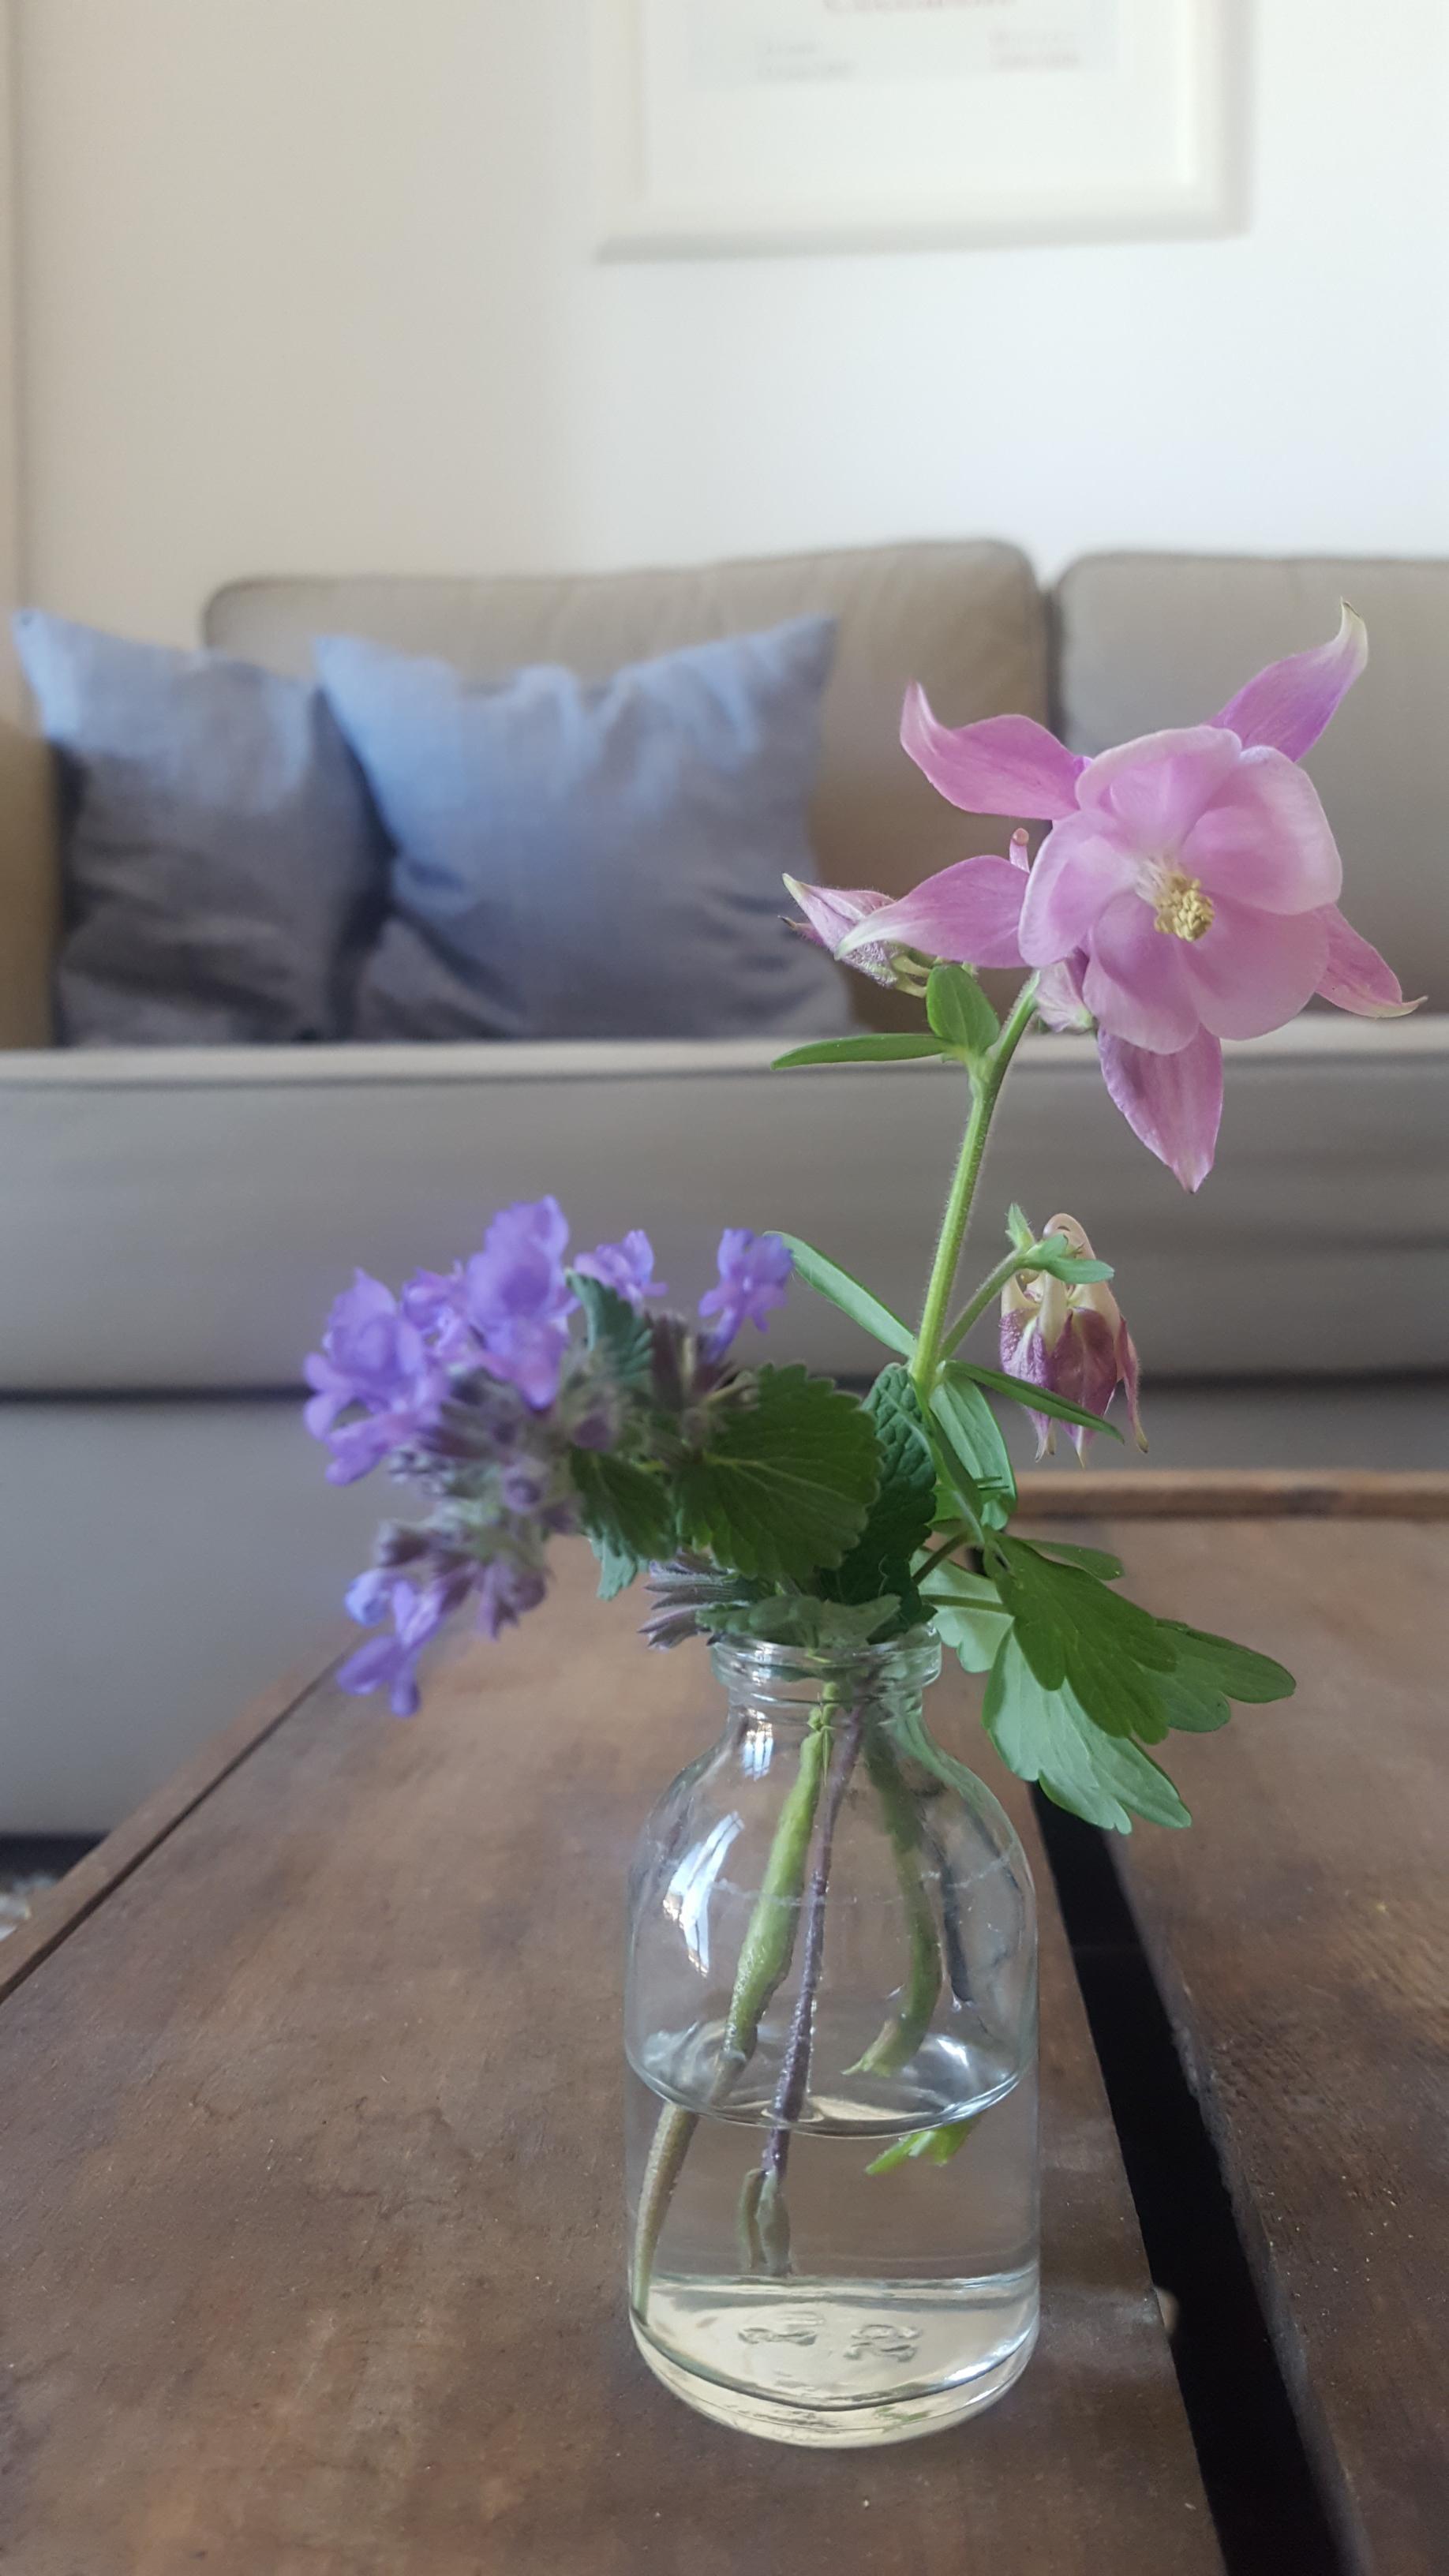 Abgebrochene Blüten vom Balkon bekommen in Mini-Vasen ein zweites Leben (Akelei, Katzenminze).